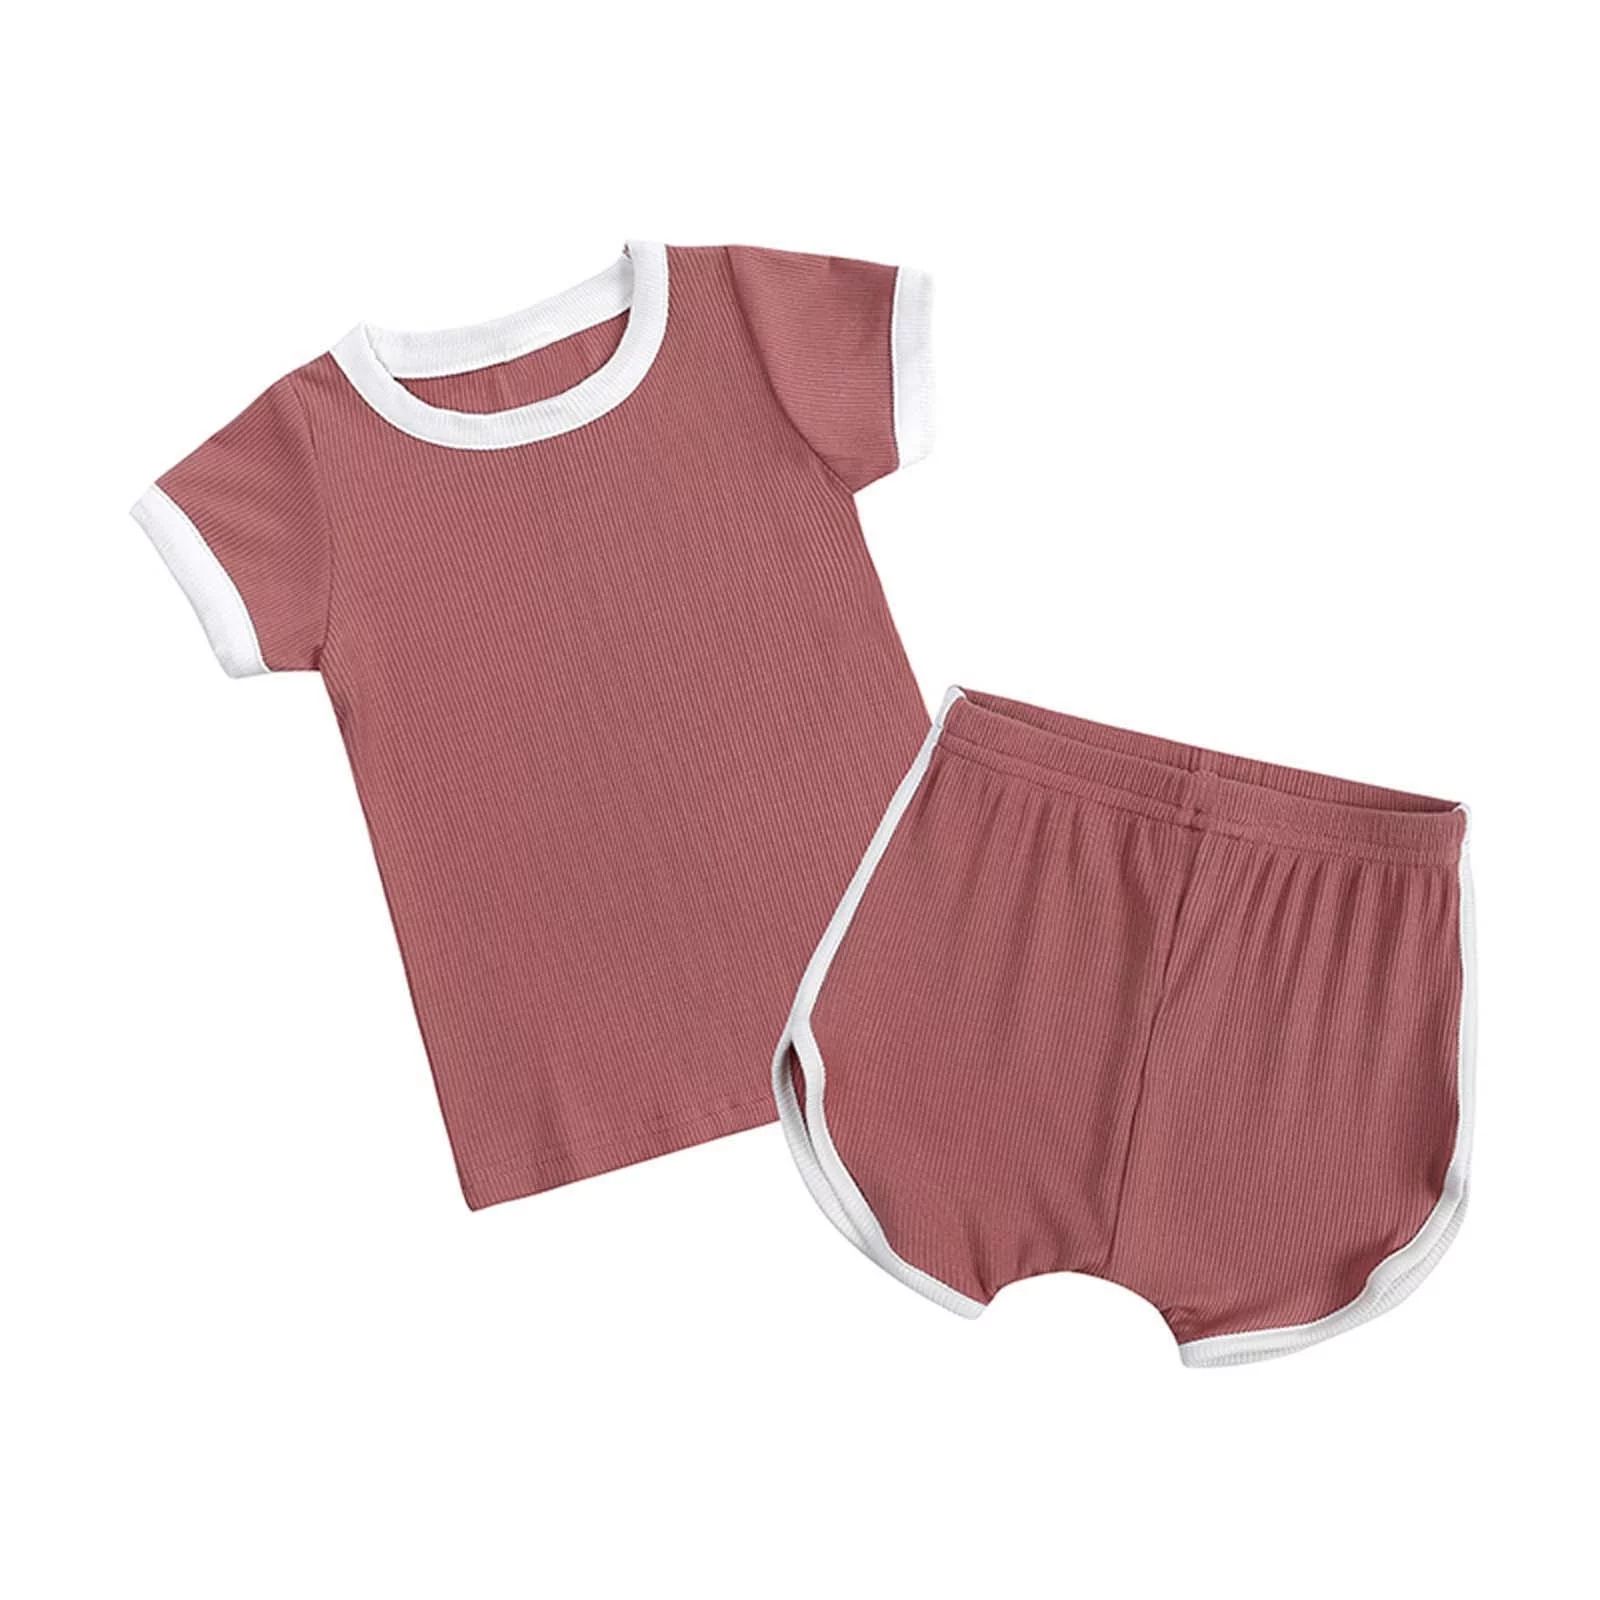 piuwrlz Boy/Girls T-Shirt and Pants Short Sleeve Top Pink Size 9-12 Months | Walmart (US)